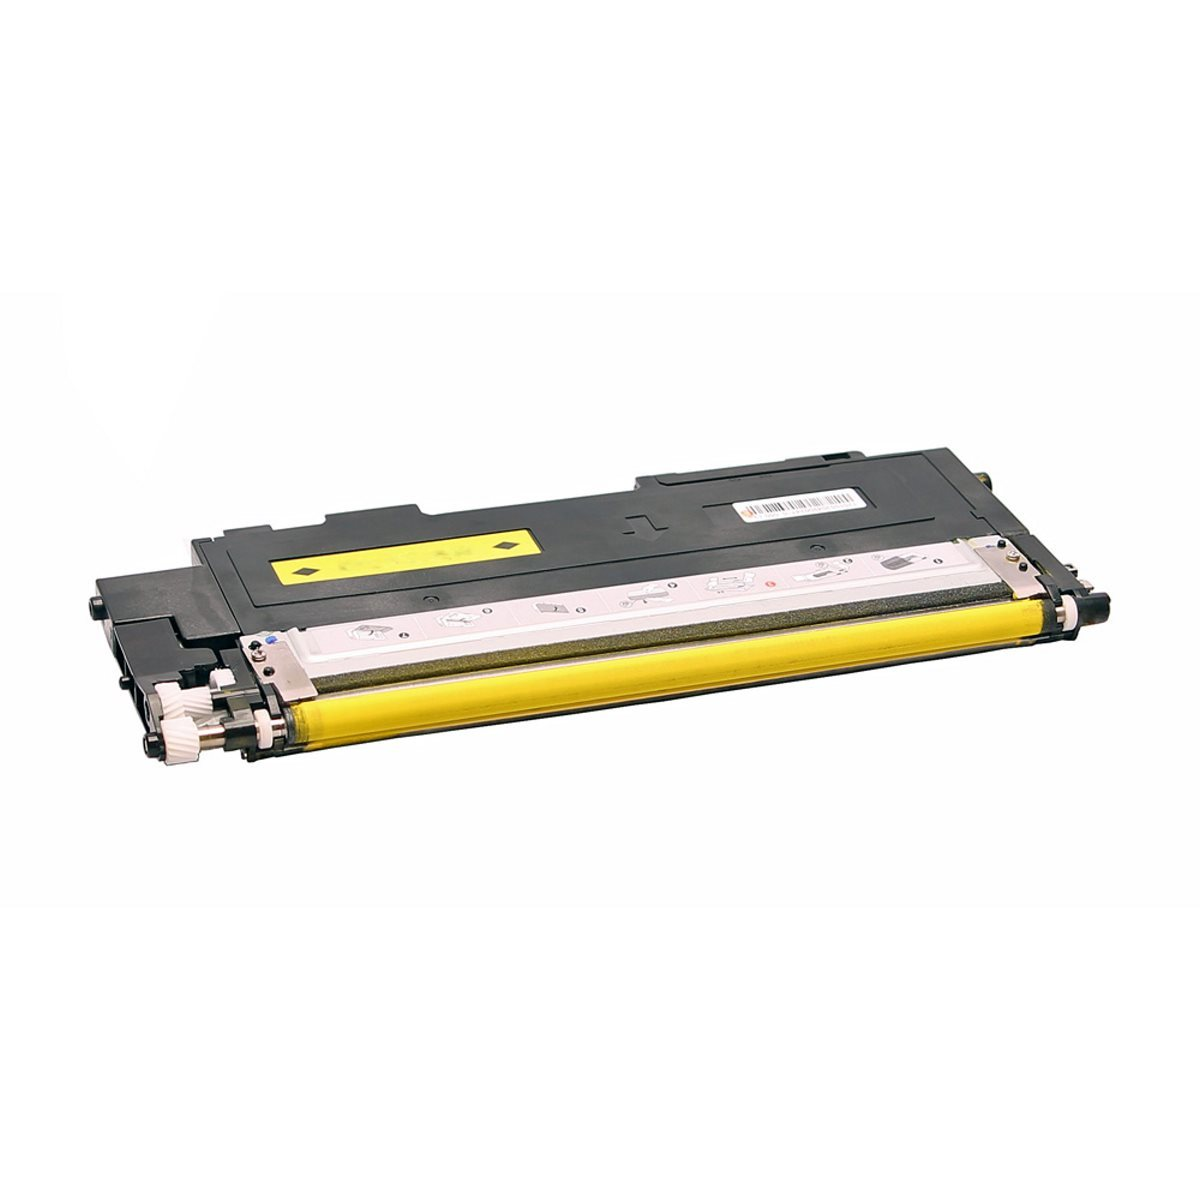 ABC Kompatibler Toner YELLOW (CLTY406S/ELS Y406S CLT-Y406/ELS Y406 Yellow)